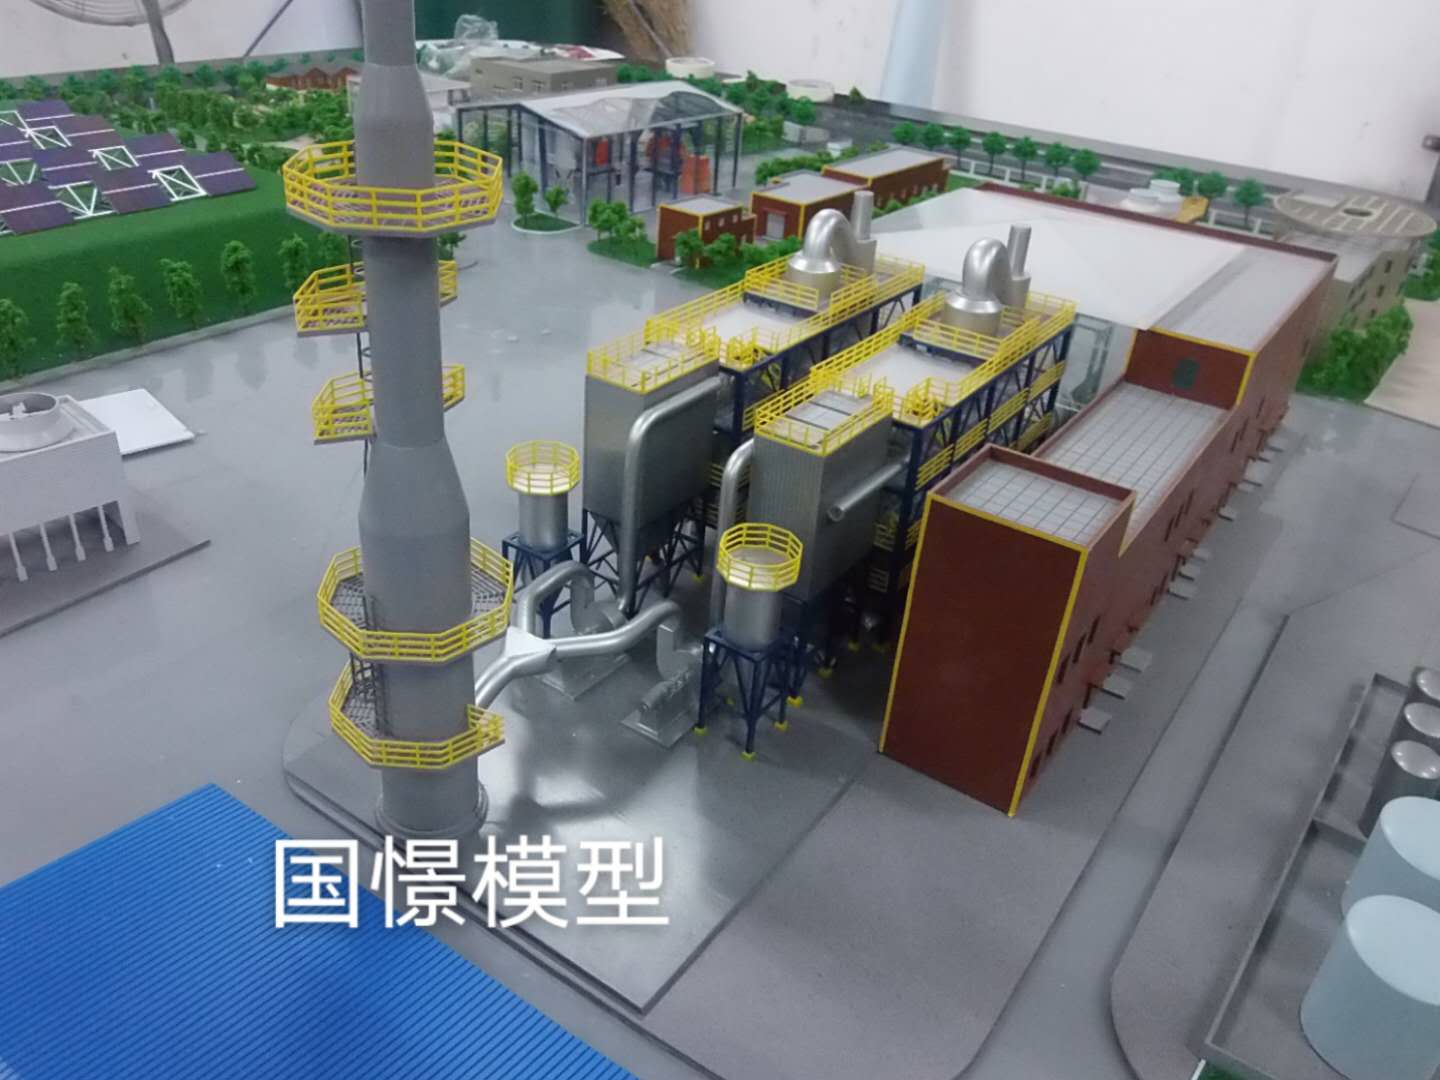 浦城县工业模型